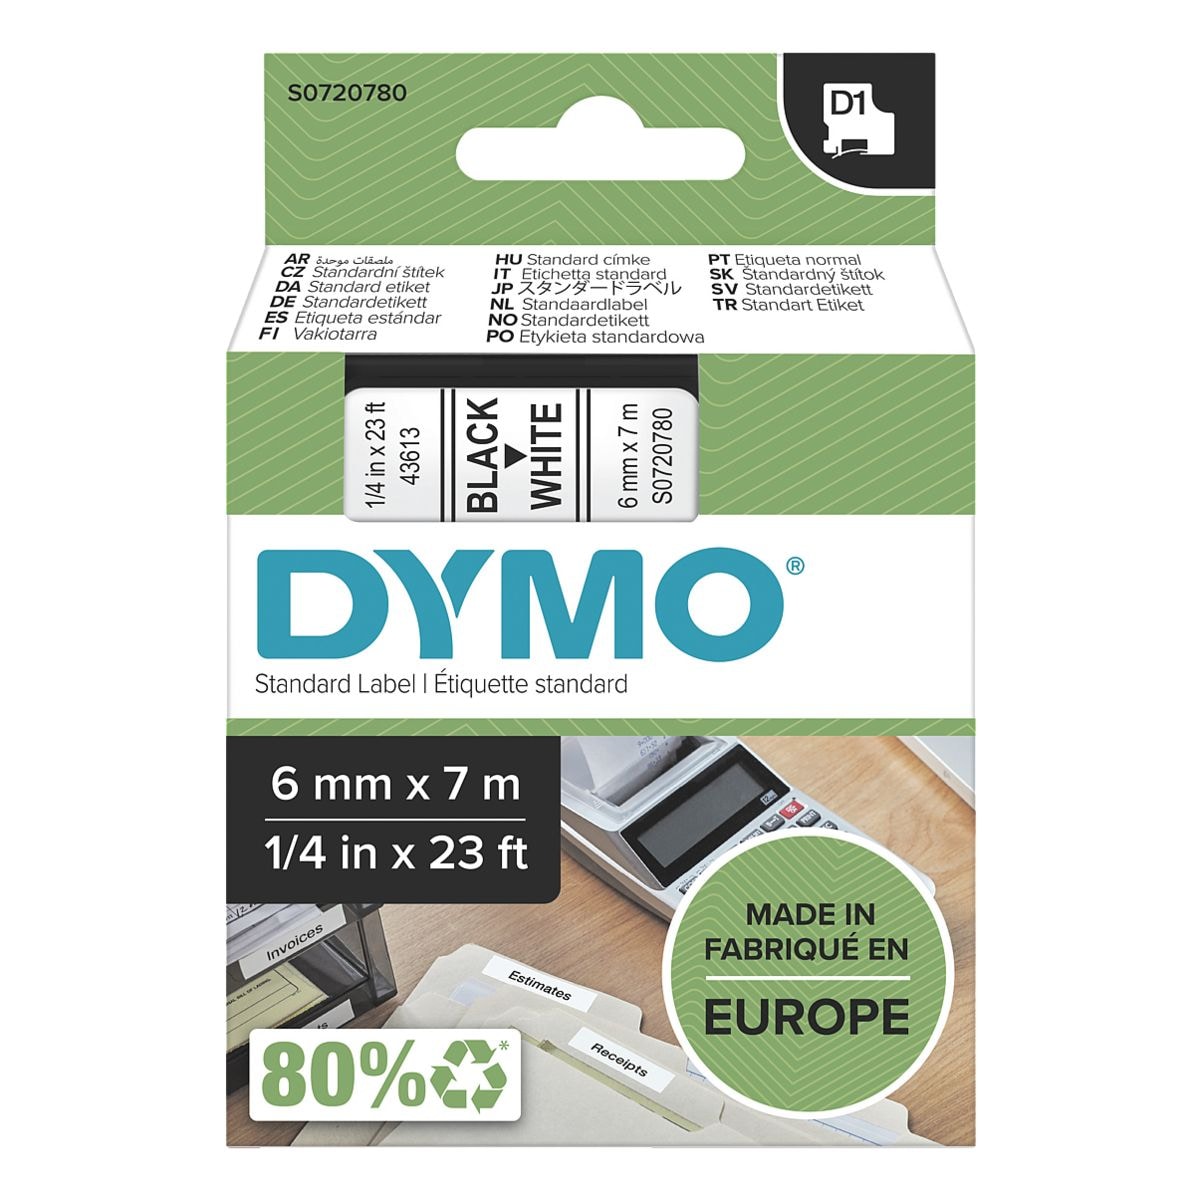 Dymo Ruban pour titreuse D1 6 mm x 7 m pour titreuse Dymo D1